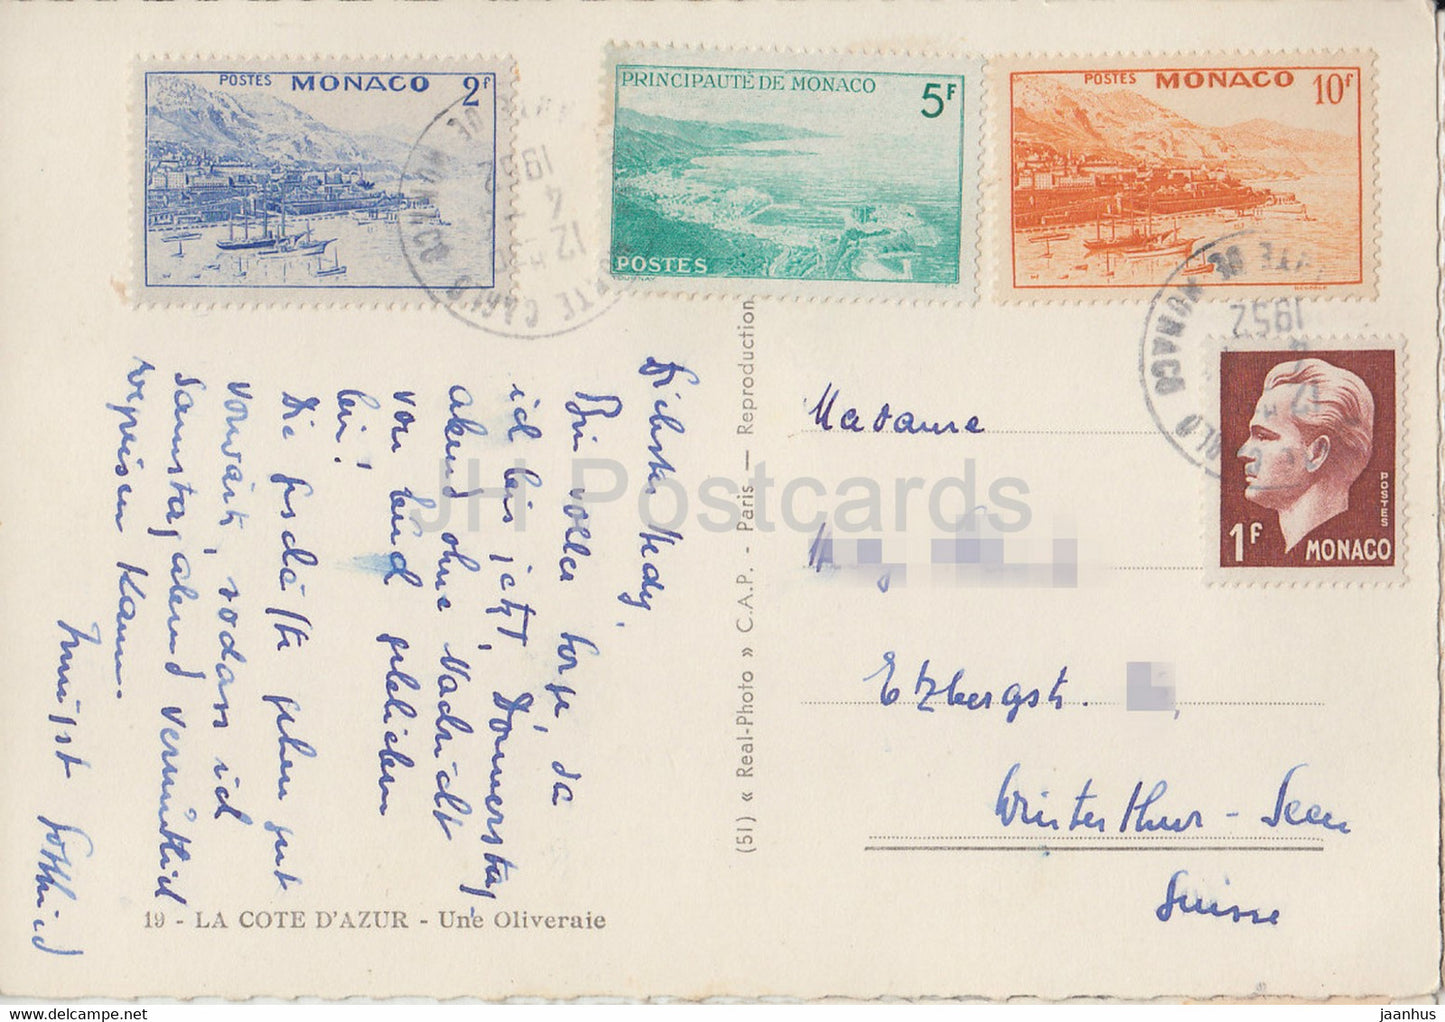 La Cote d'Azur - Une Oliveraie - alte Postkarte - 1952 - Frankreich - gebraucht